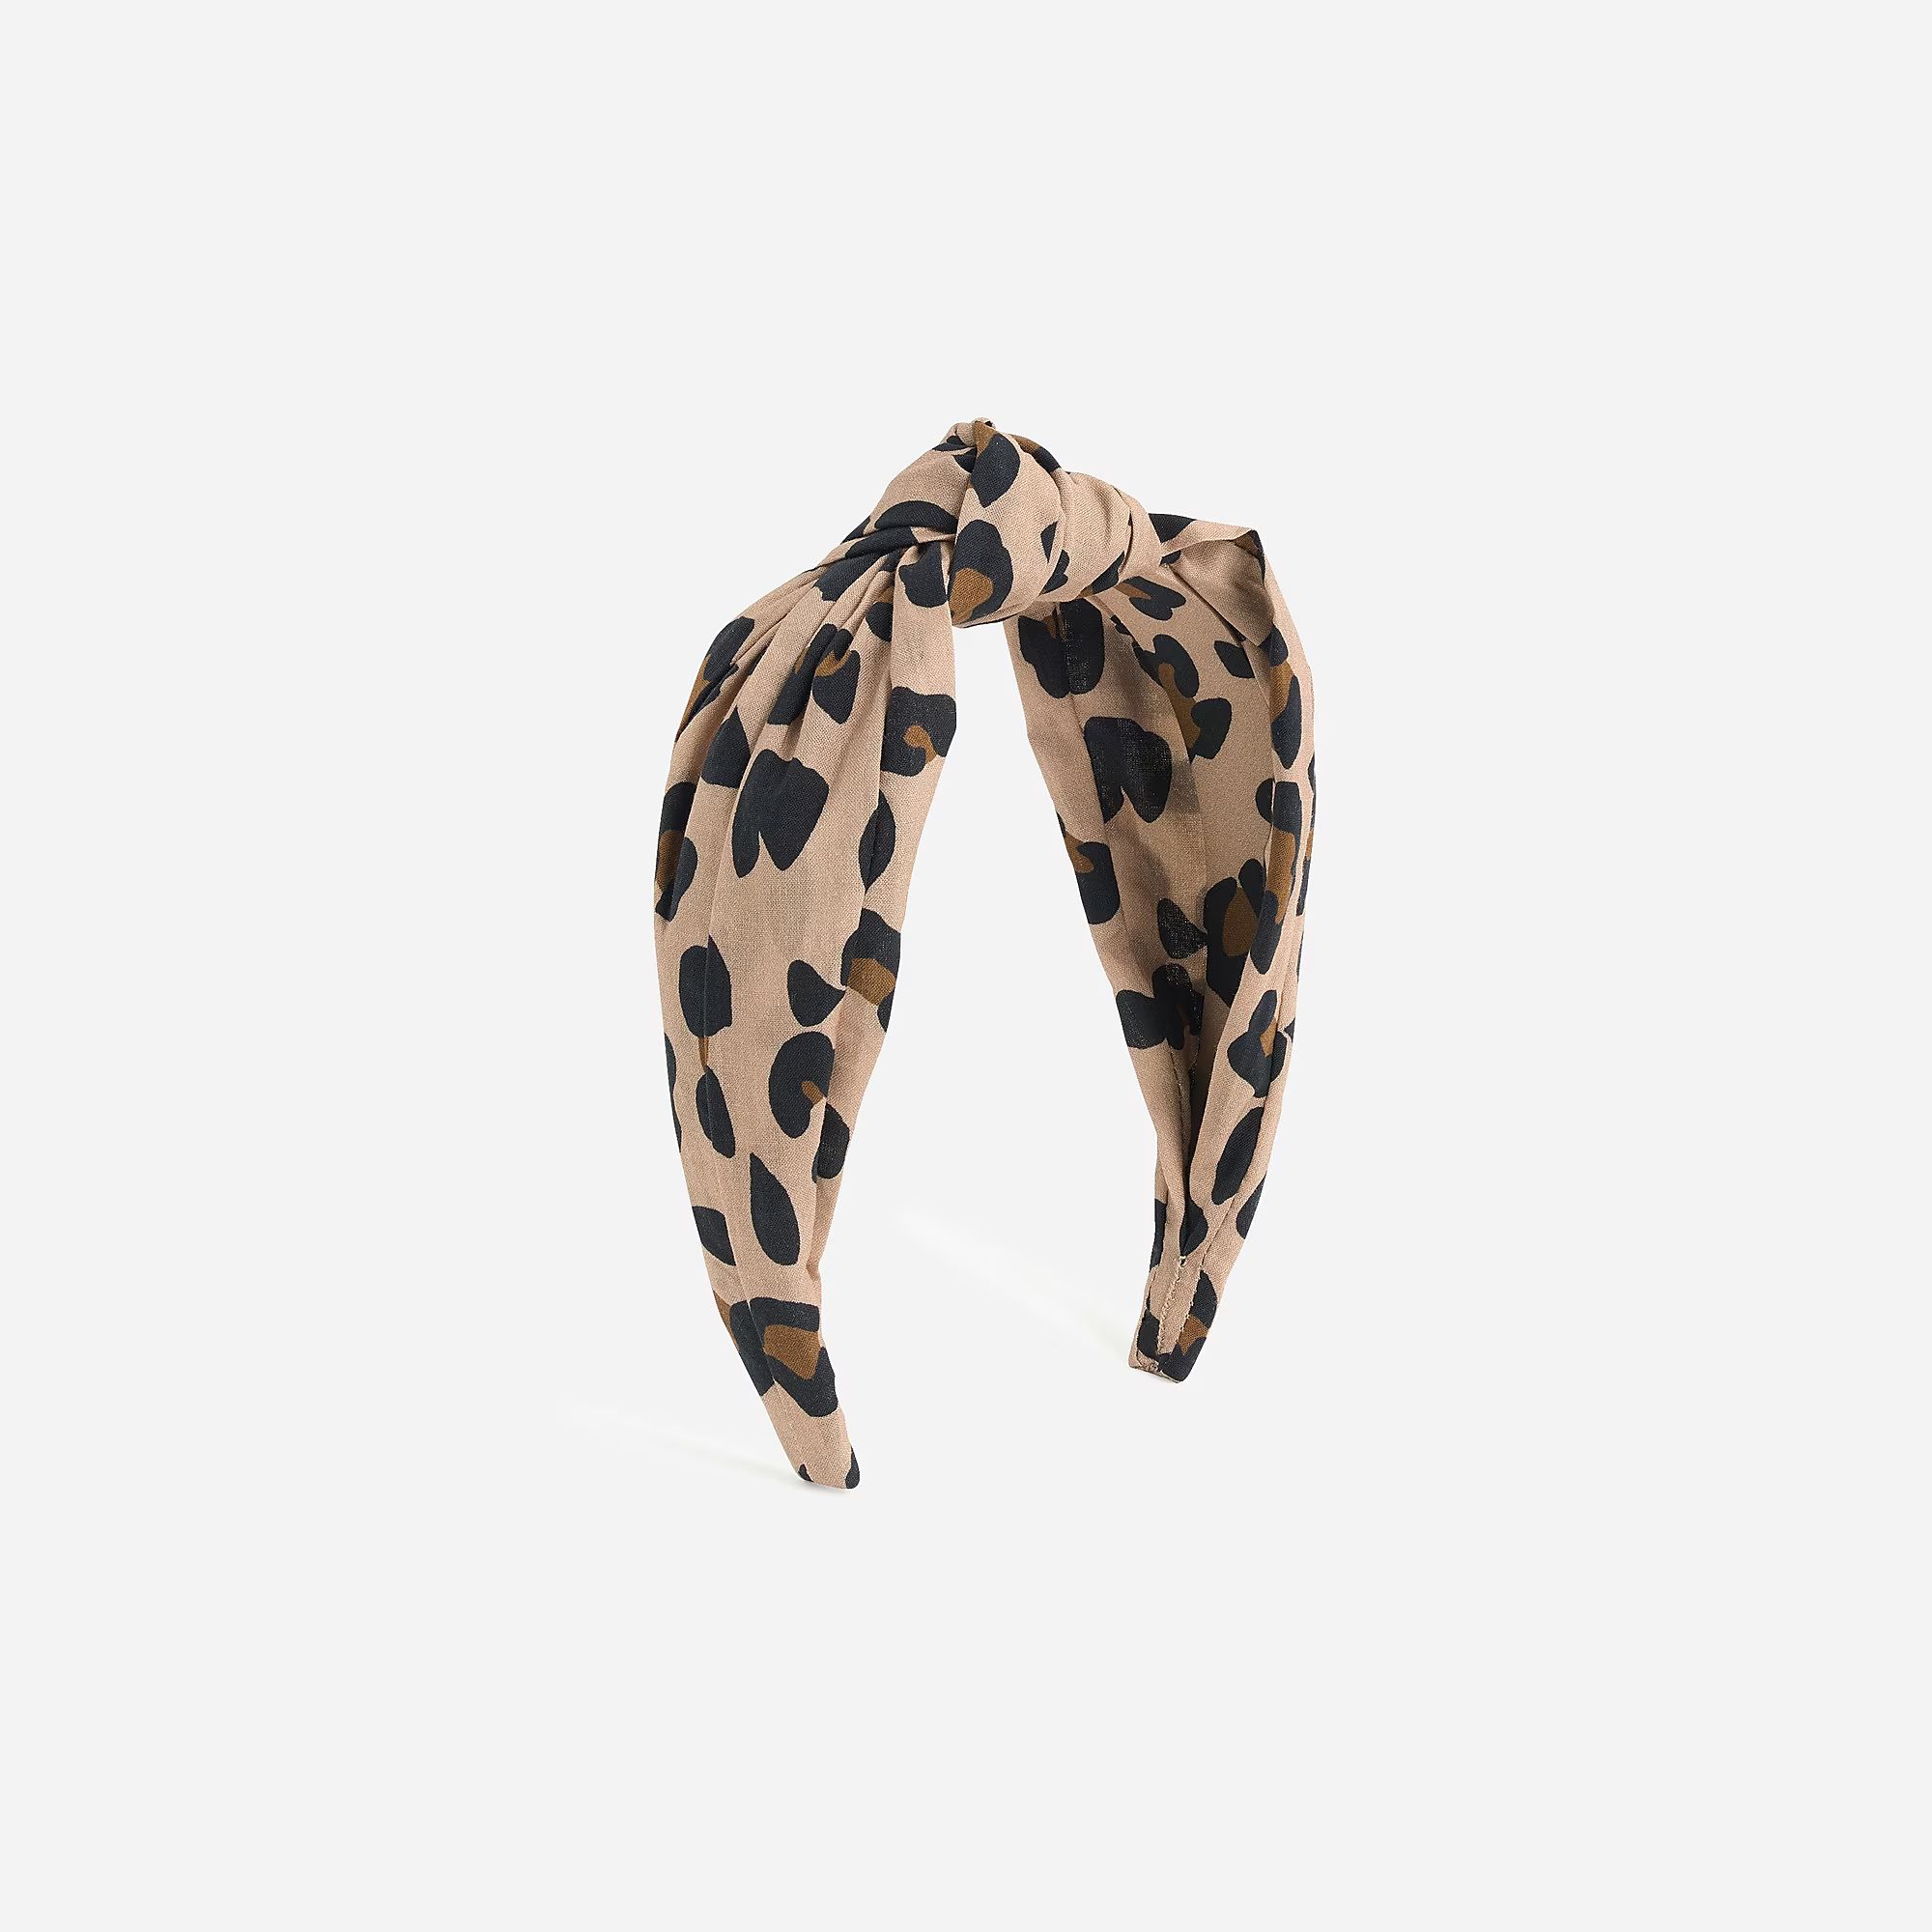 Turban knot headband in leopard | J.Crew US